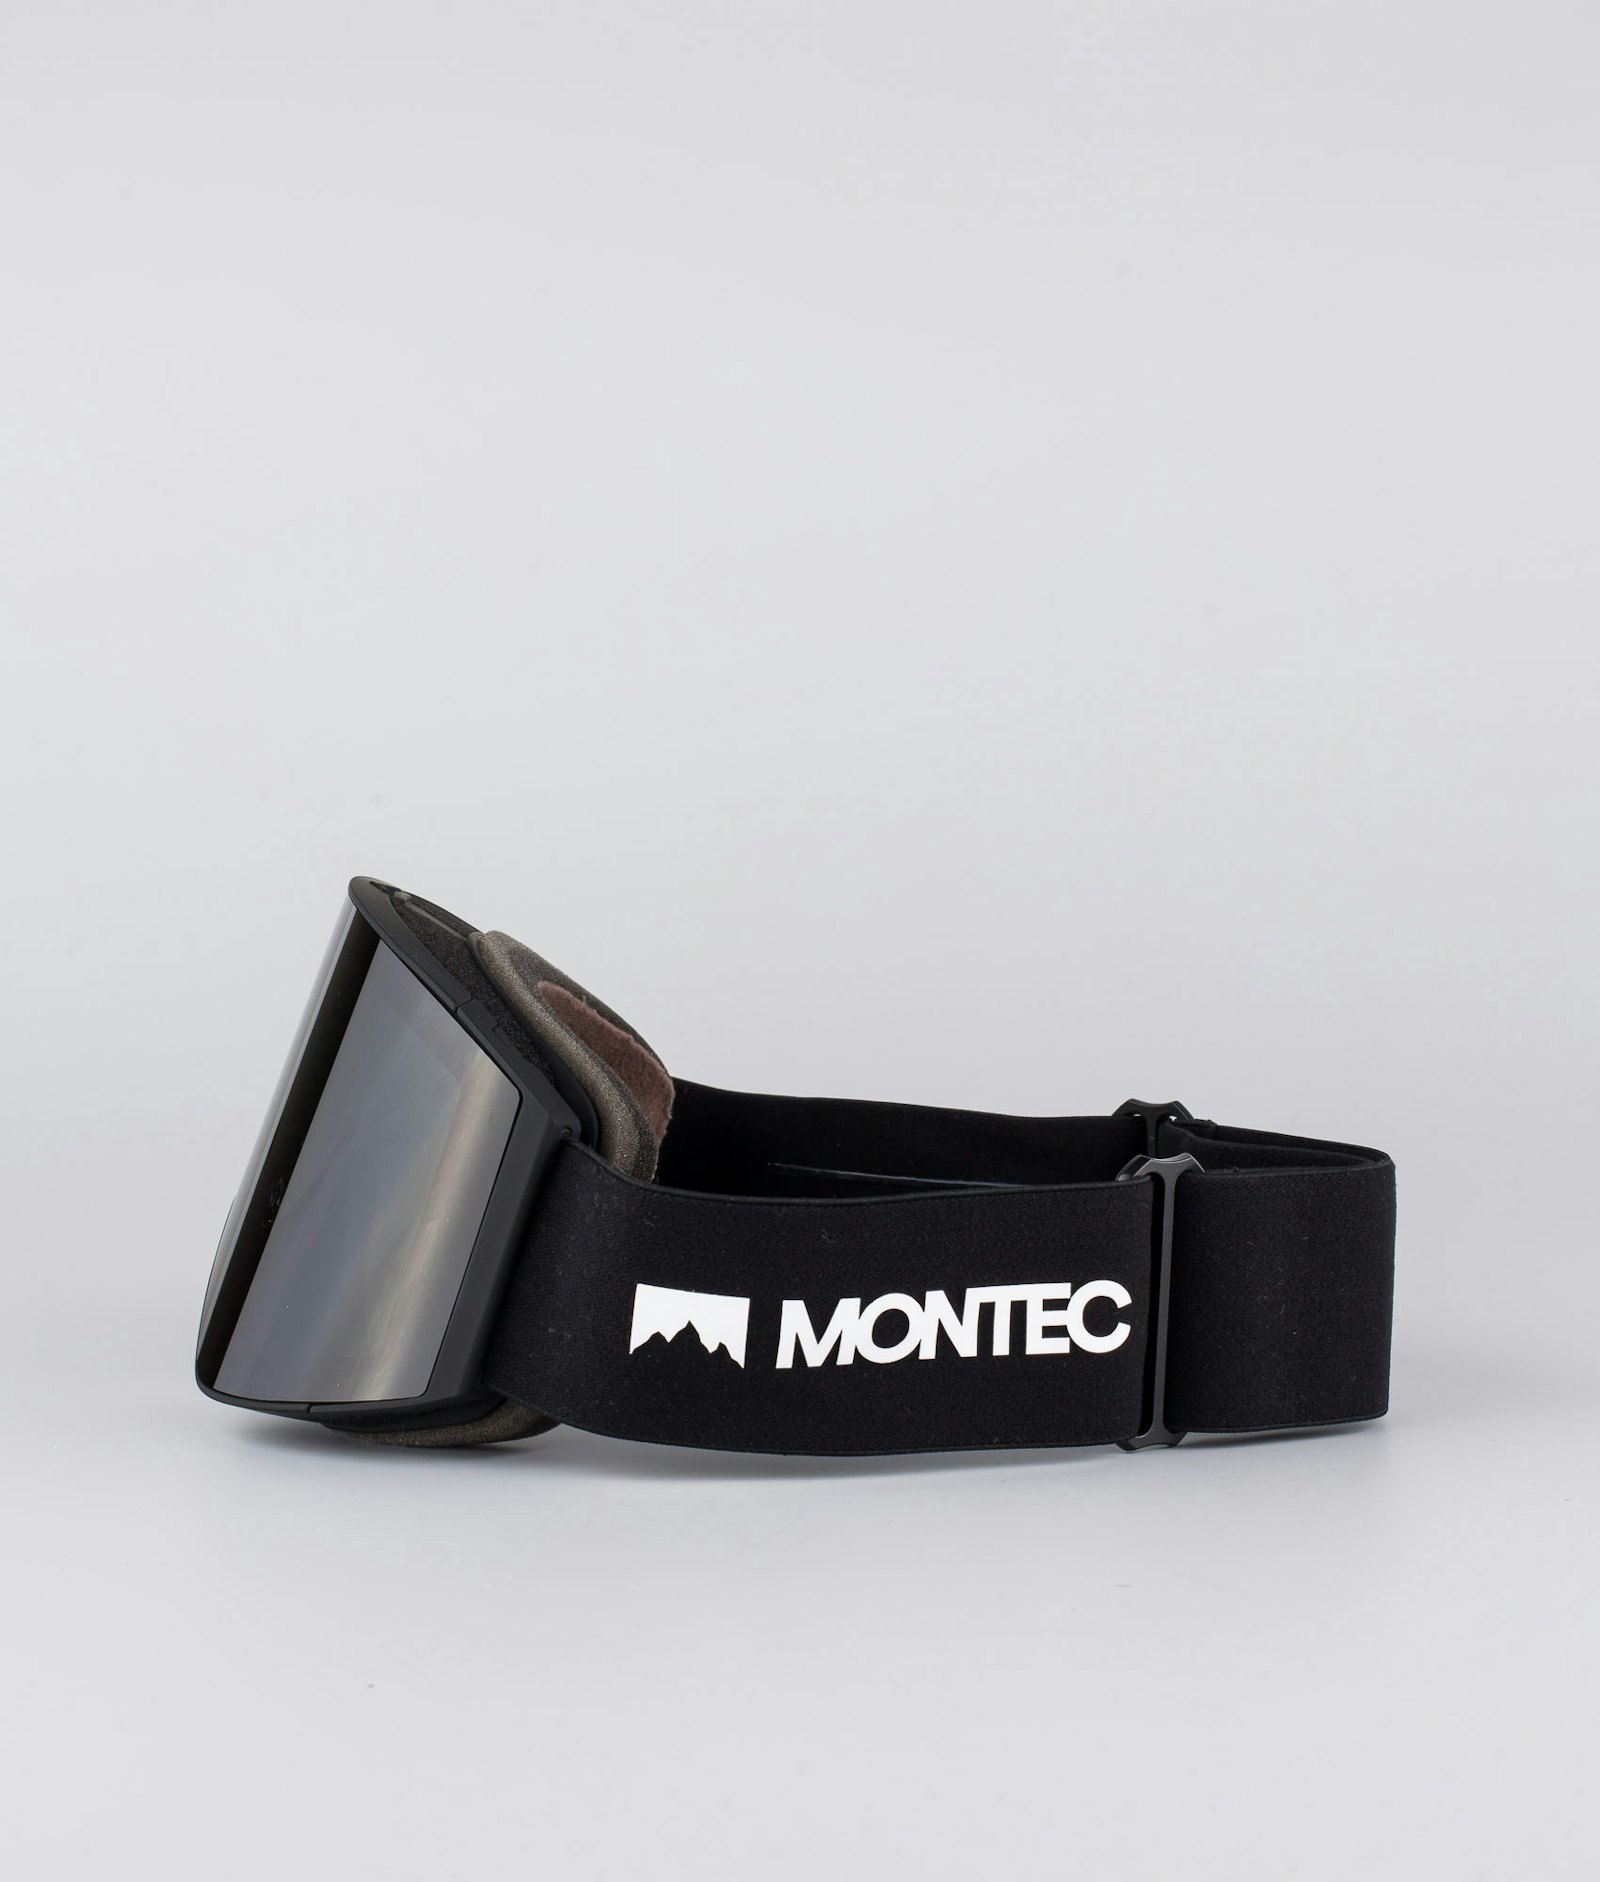 Montec Scope 2020 Large Skibrille Black/Black